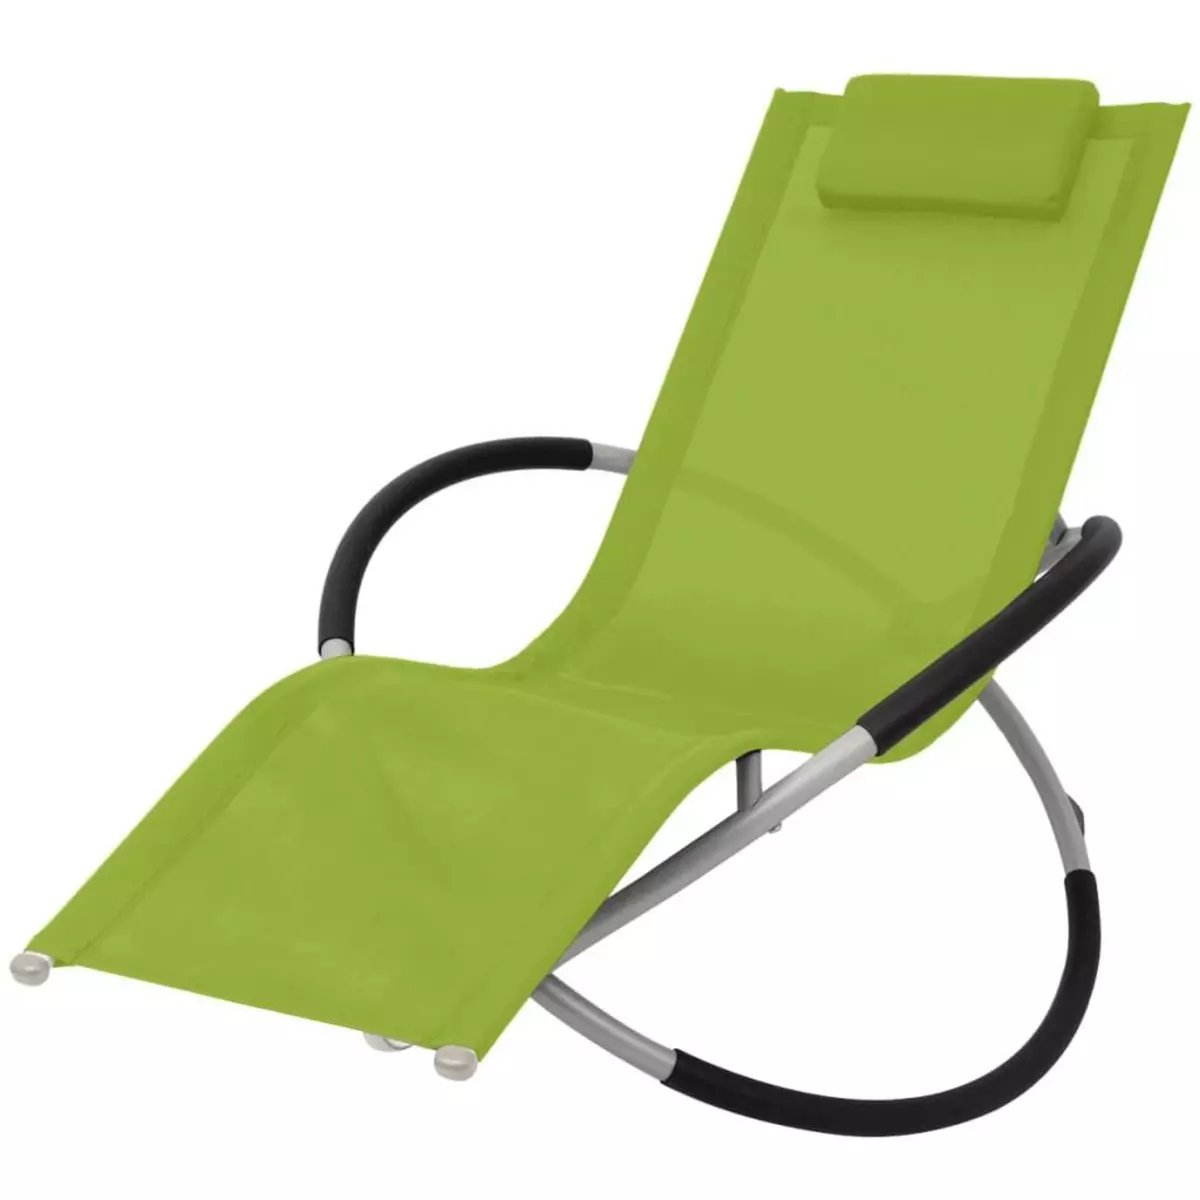 VIDAXL Chaise longue geometrique d'exterieur Acier Vert